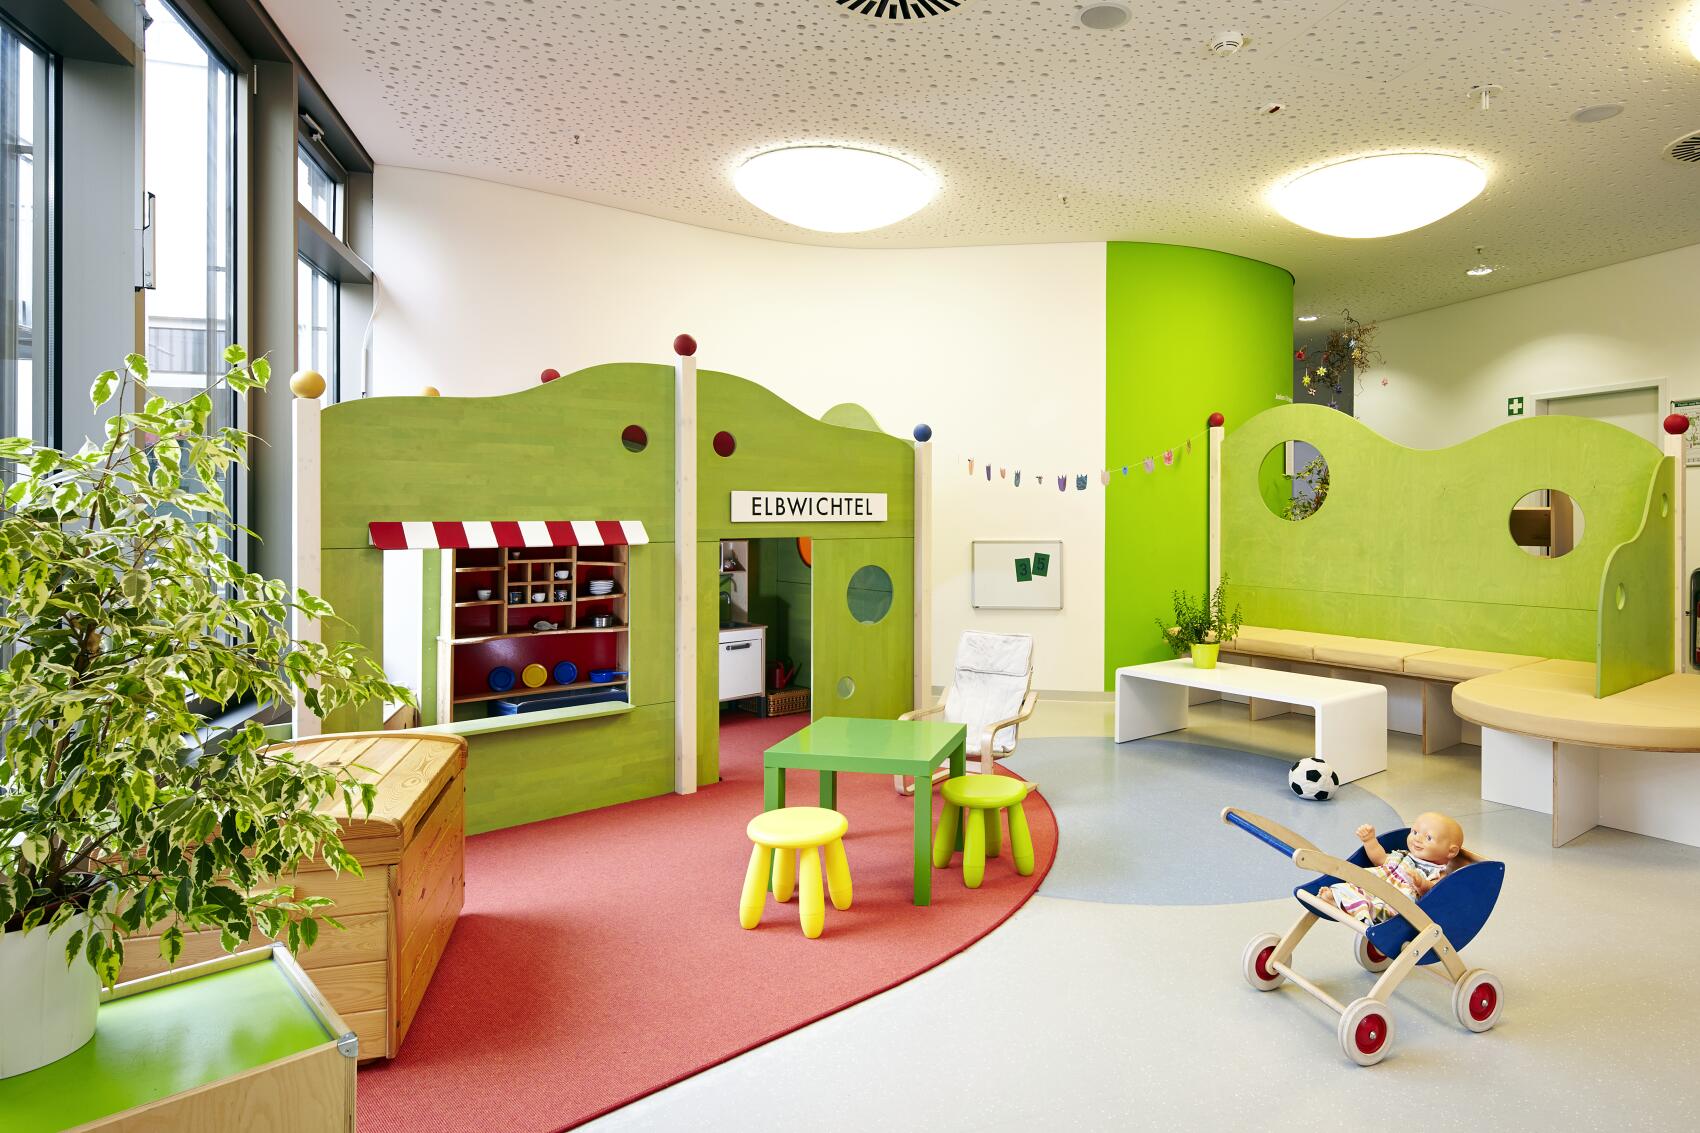 Fotos - Fröbel-Kindergarten Elbwichtel - 4